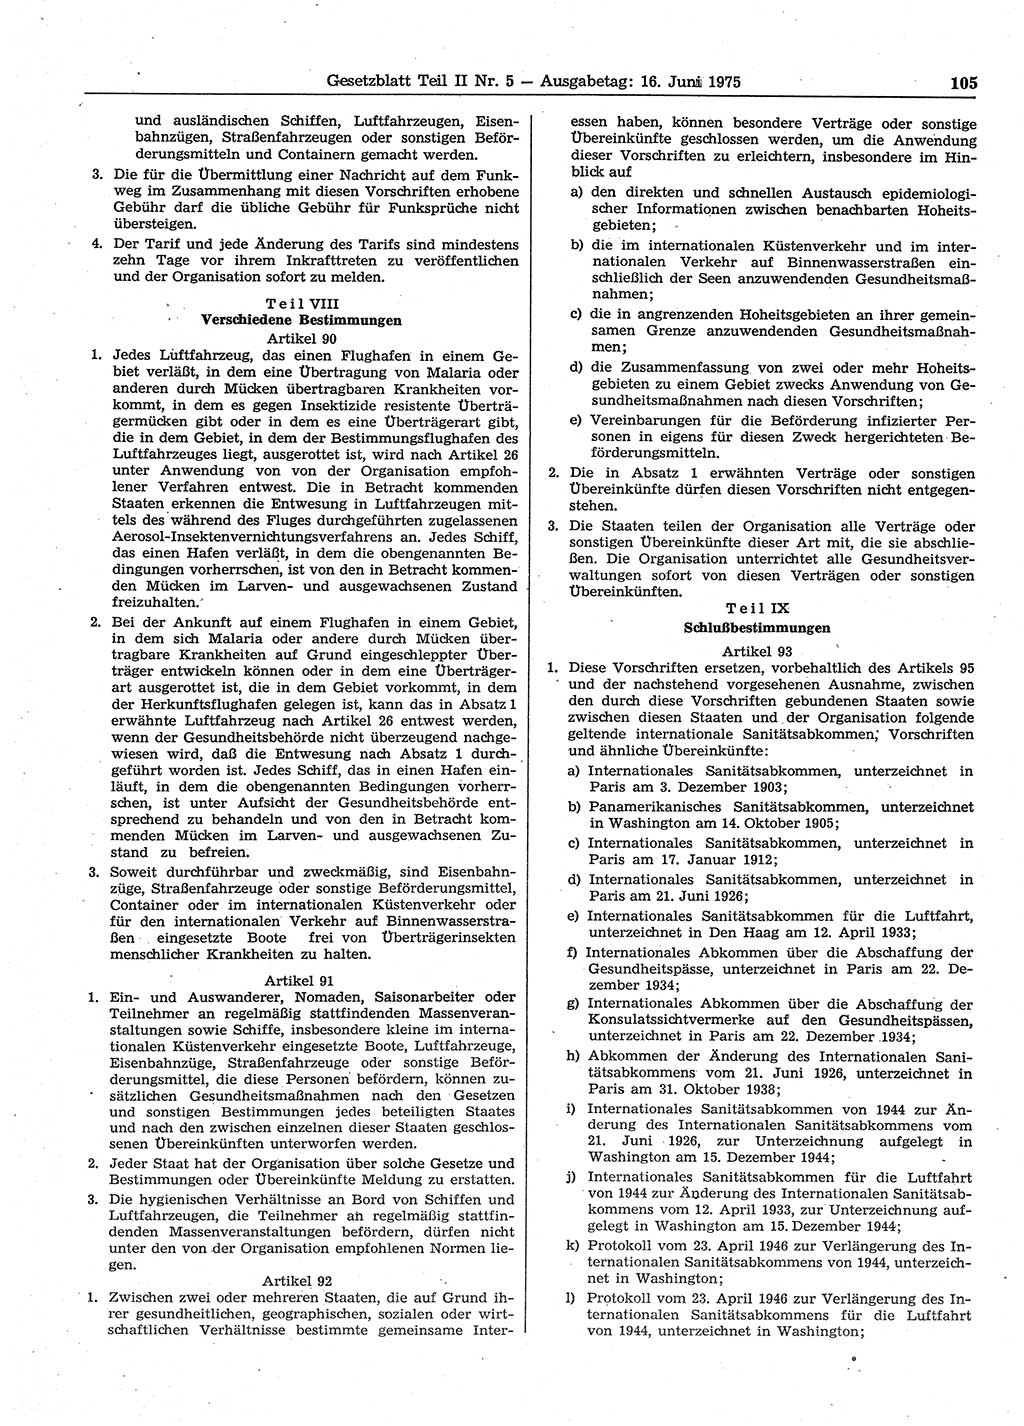 Gesetzblatt (GBl.) der Deutschen Demokratischen Republik (DDR) Teil ⅠⅠ 1975, Seite 105 (GBl. DDR ⅠⅠ 1975, S. 105)